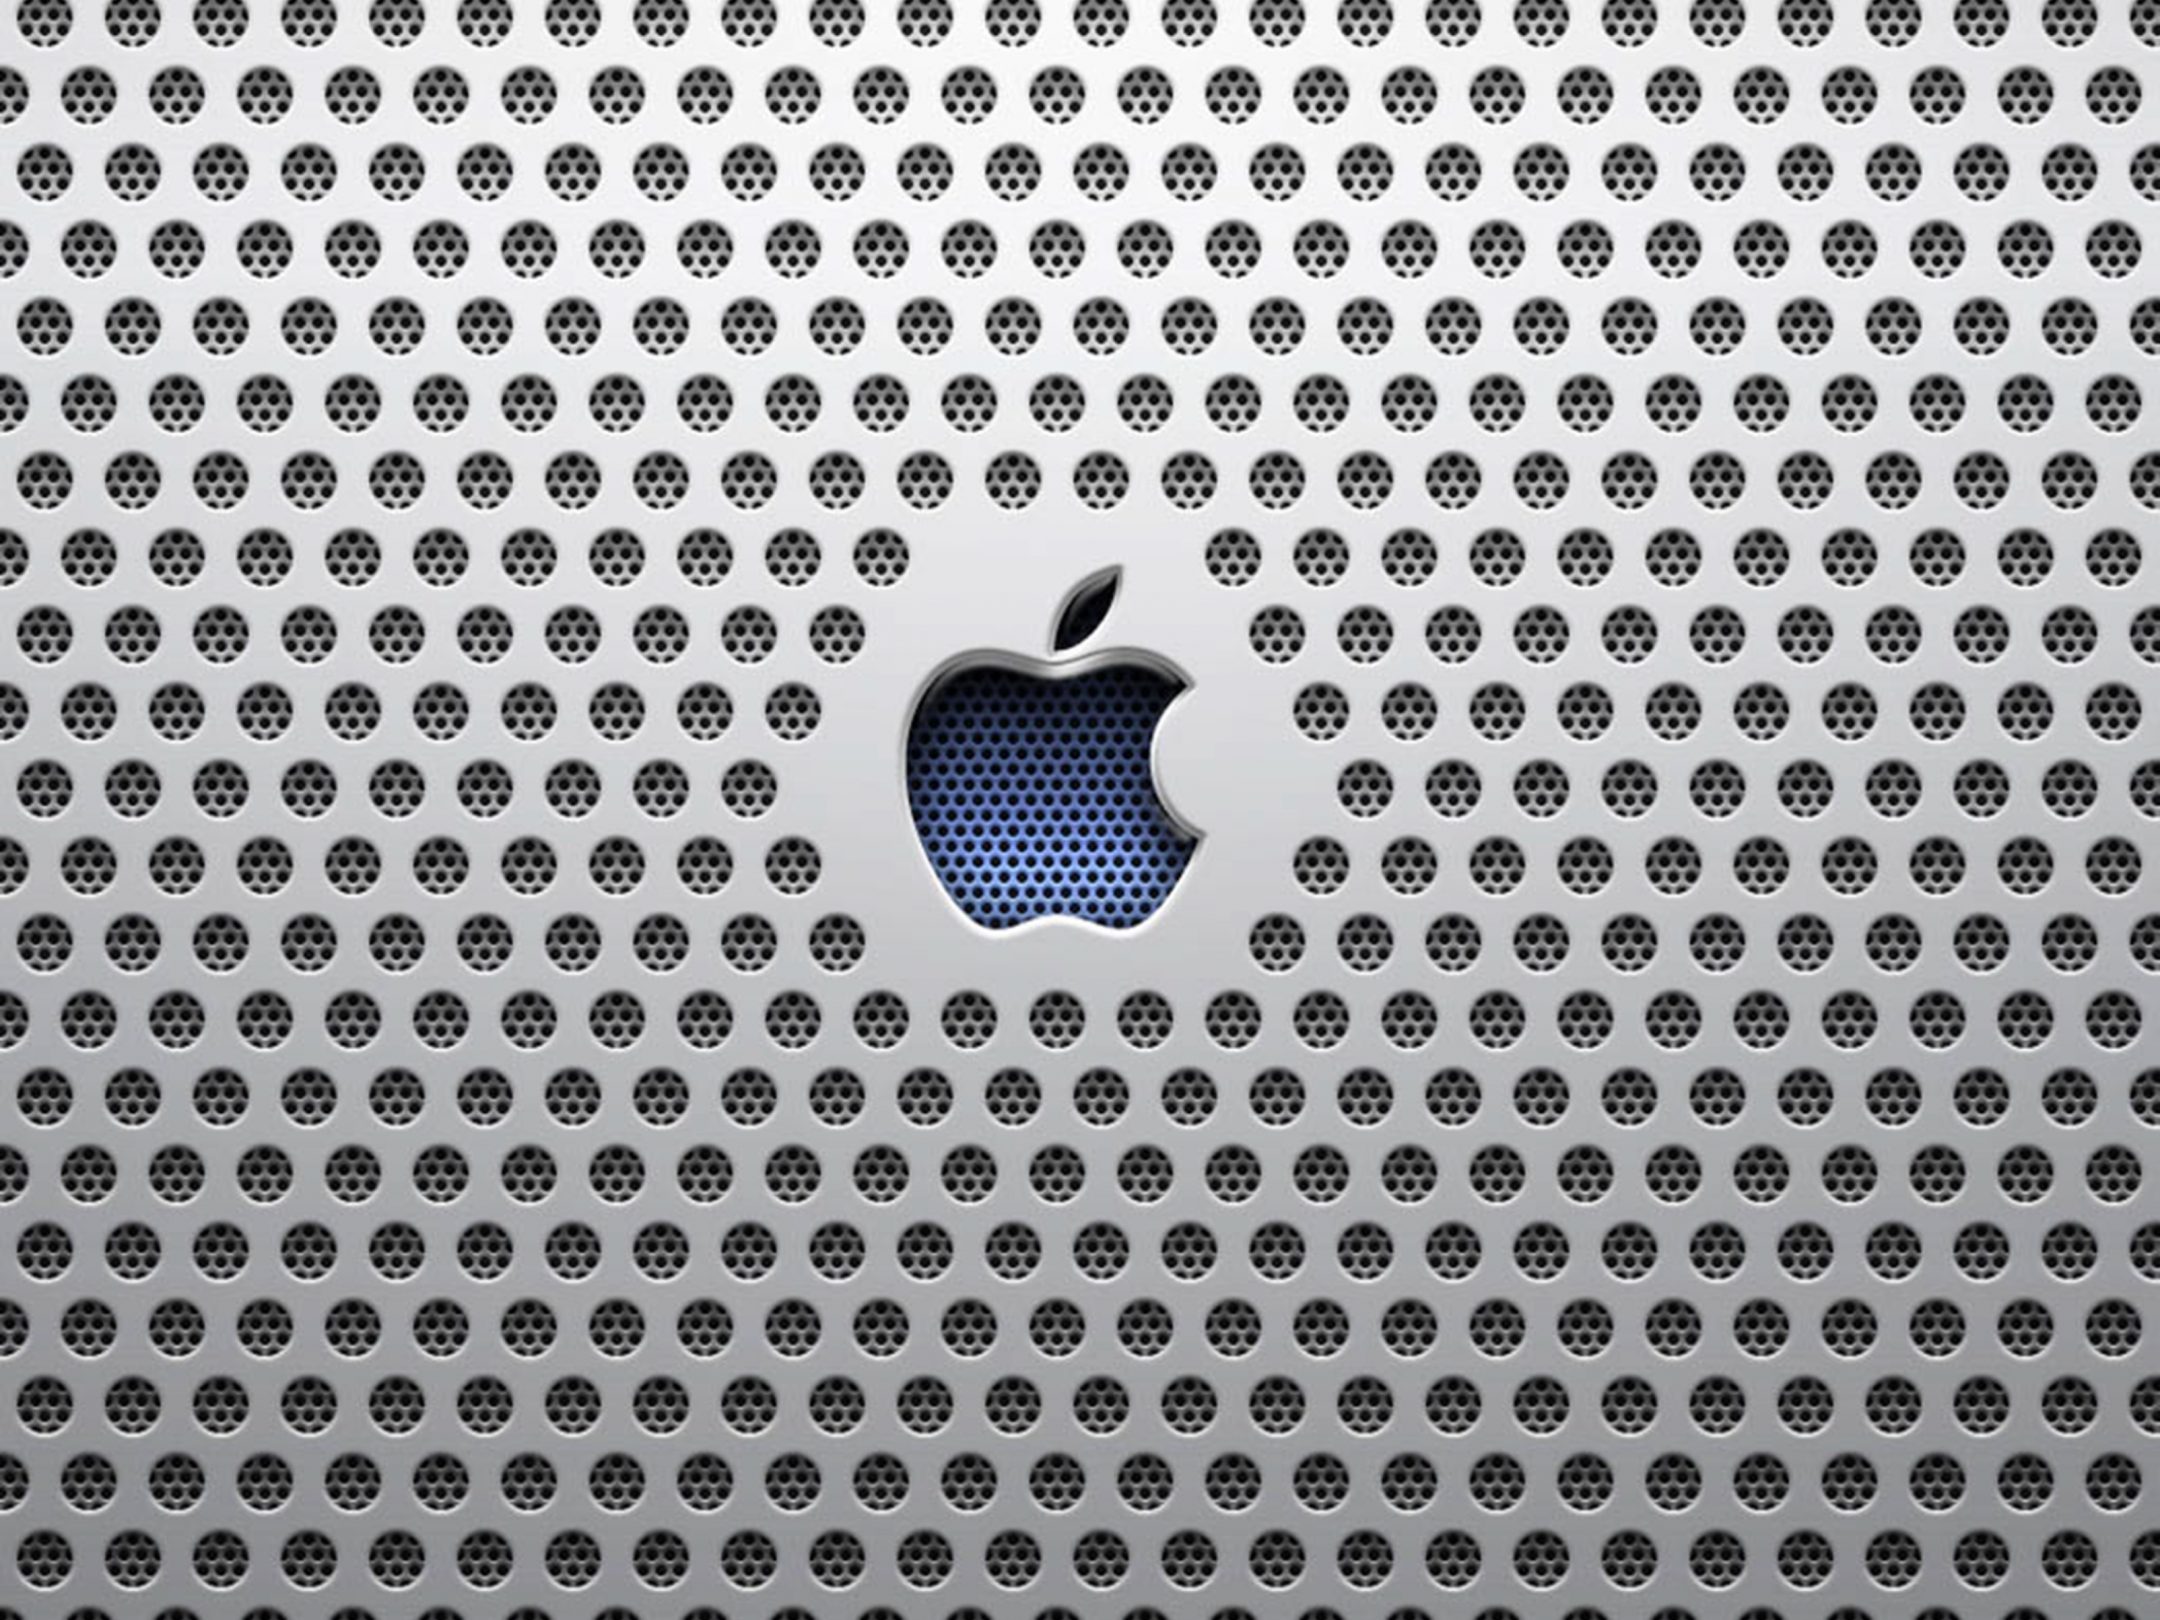 2160x1620 iPad wallpaper 4k Apple Industrial Ipad Wallpaper 2160x1620 pixels resolution